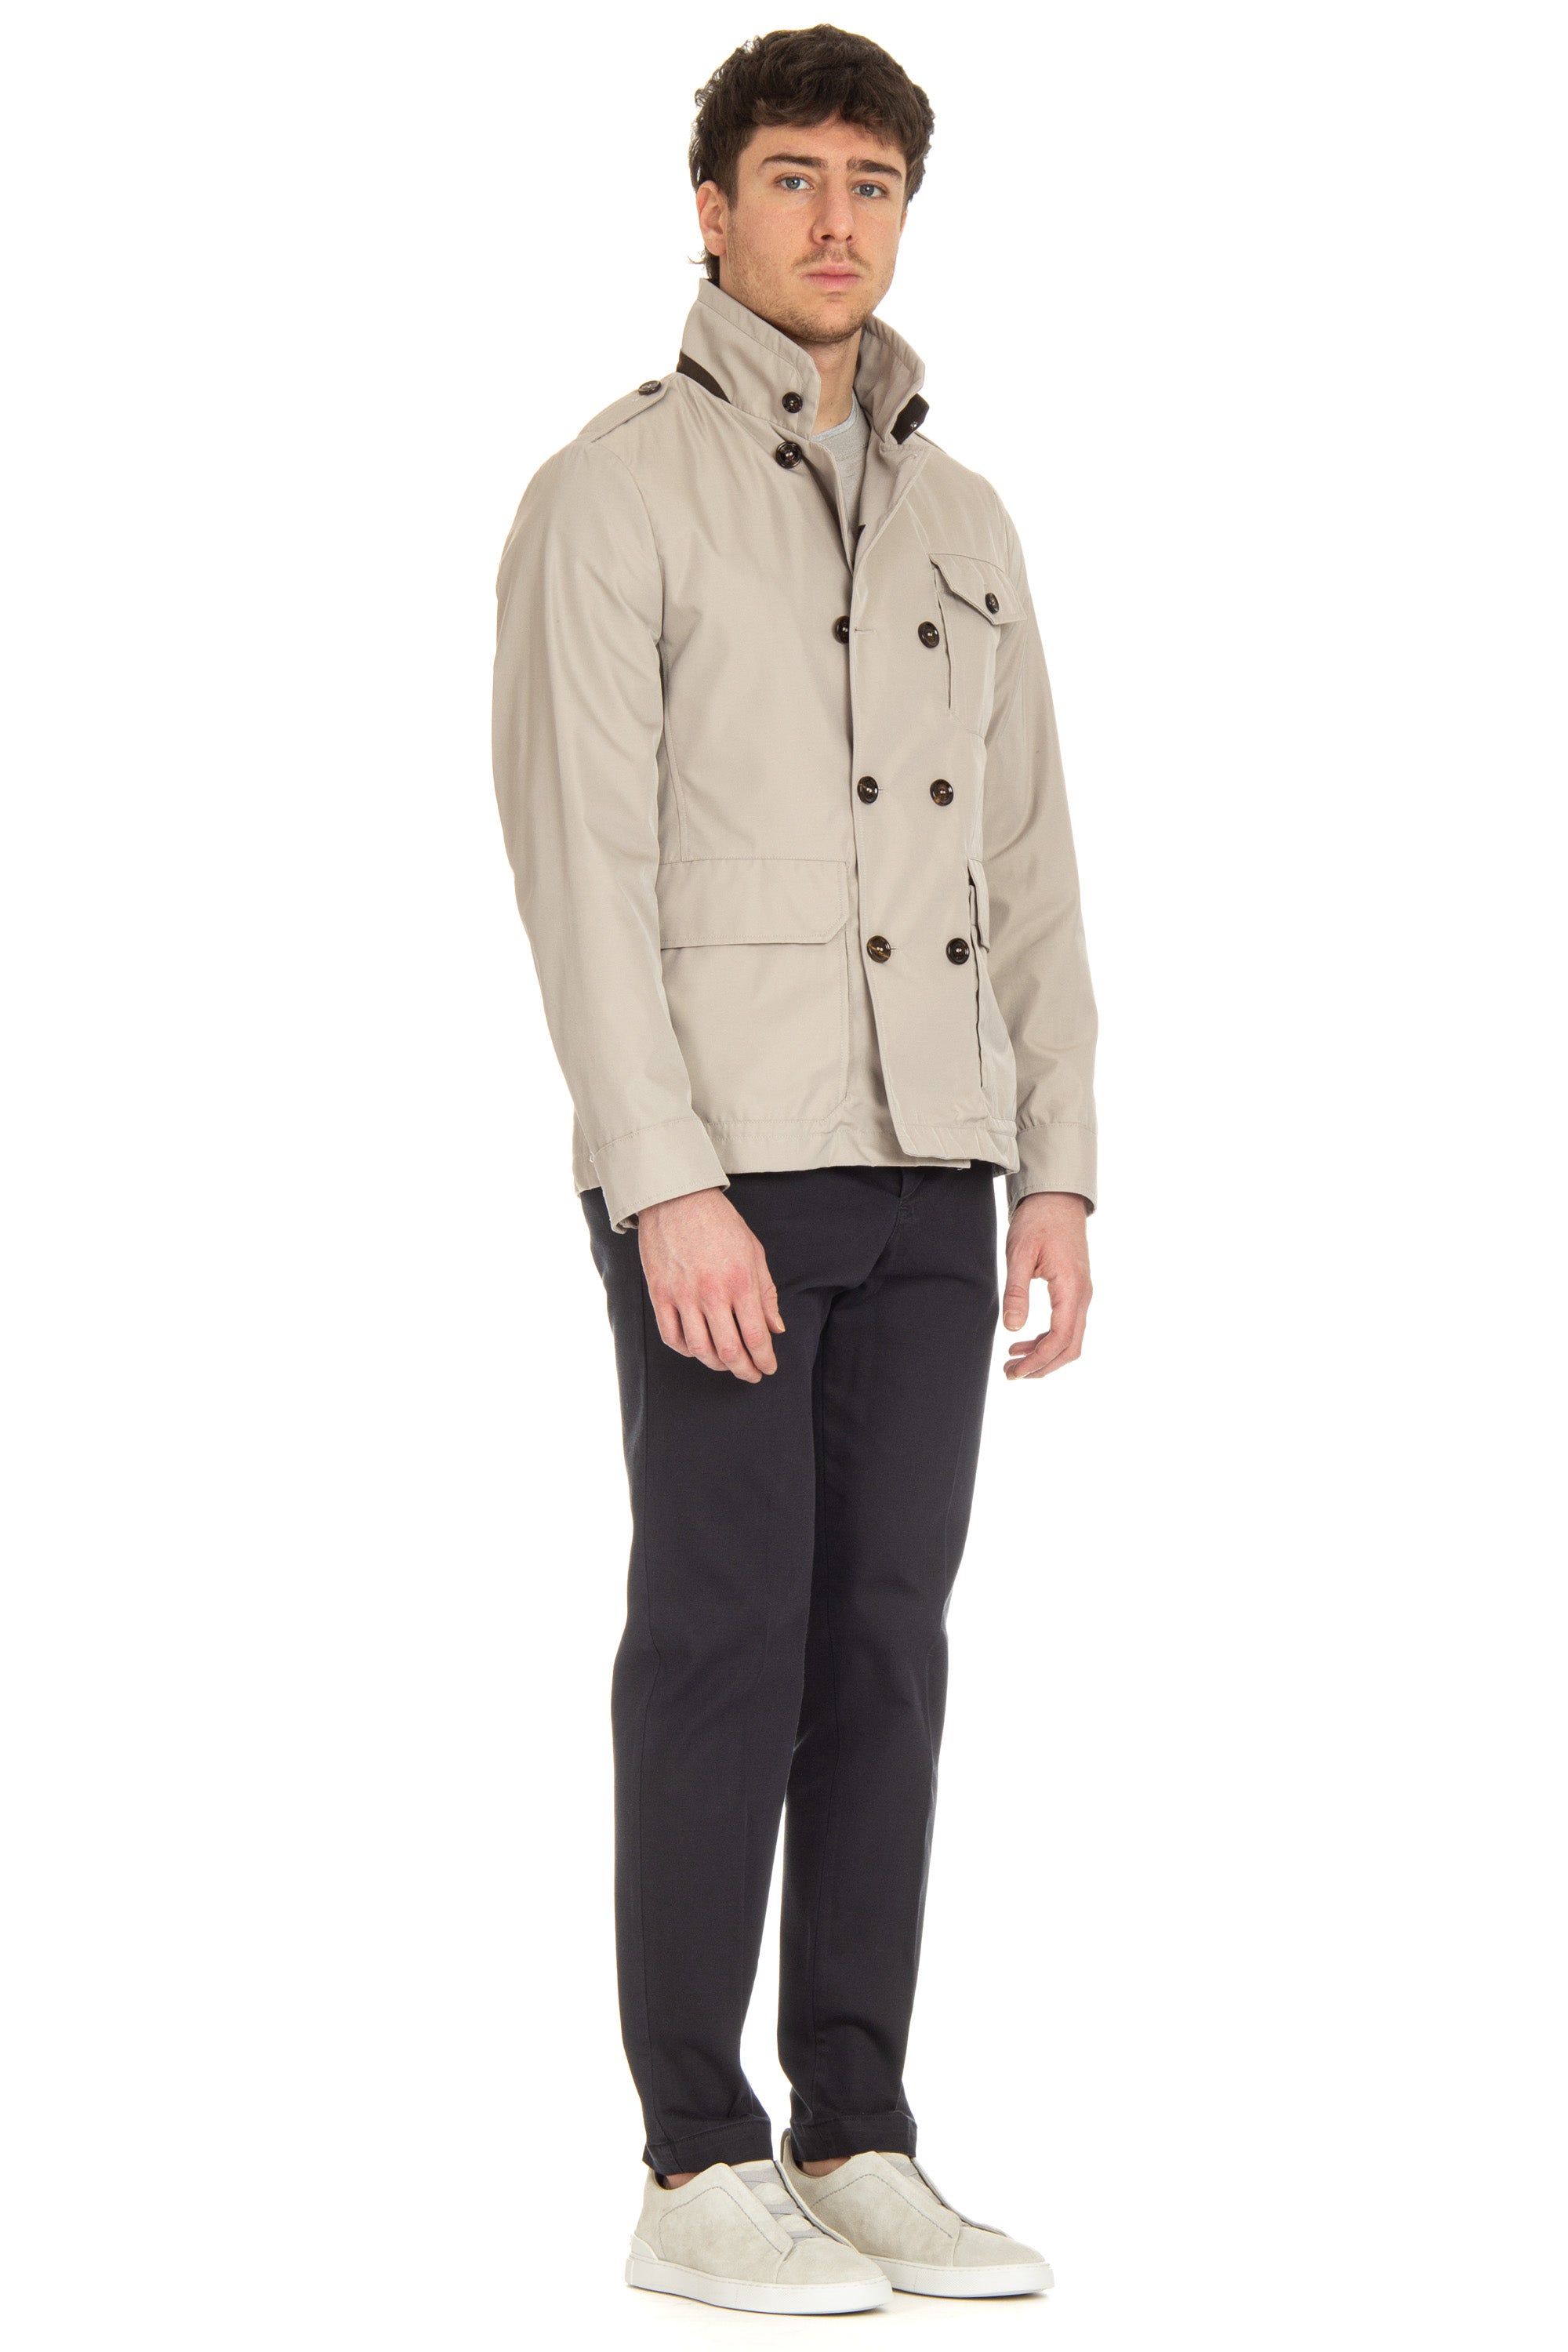 Giubbino field jacket in cotone-nylon mod. Gabetti-WCO